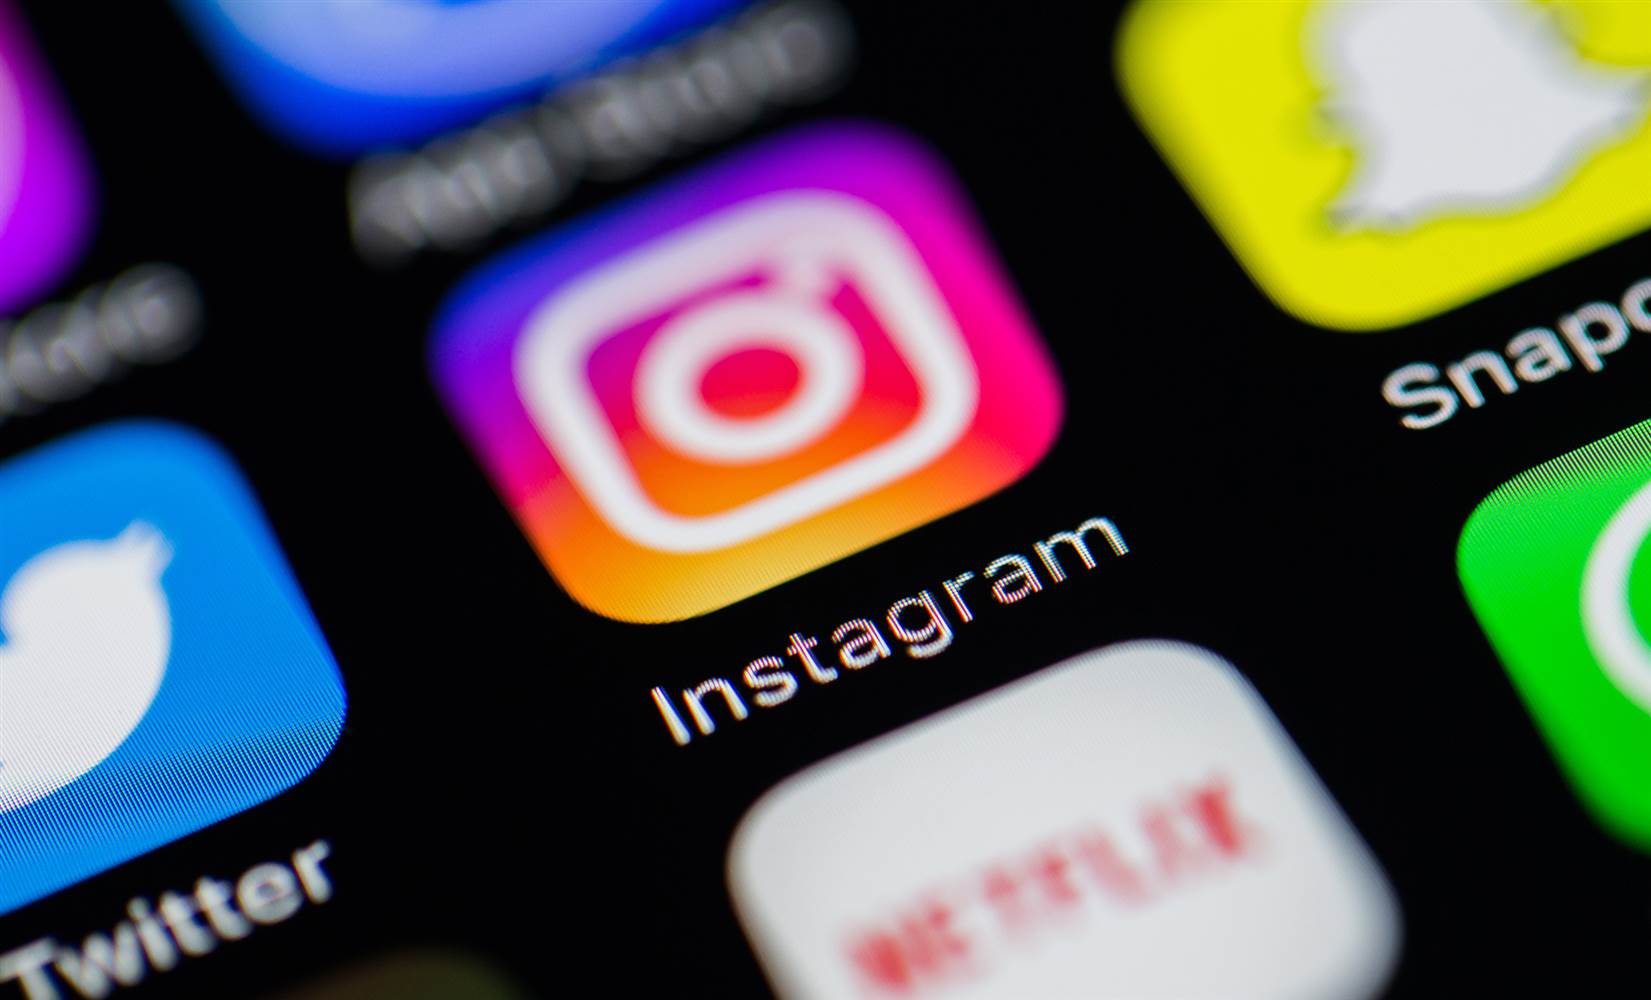 Dados privados de 49 milhões de usuários do Instagram vazaram: Chtrbox embaralha para proteger uma enorme violação de dados envolvendo celebridades, influenciadores e marcas